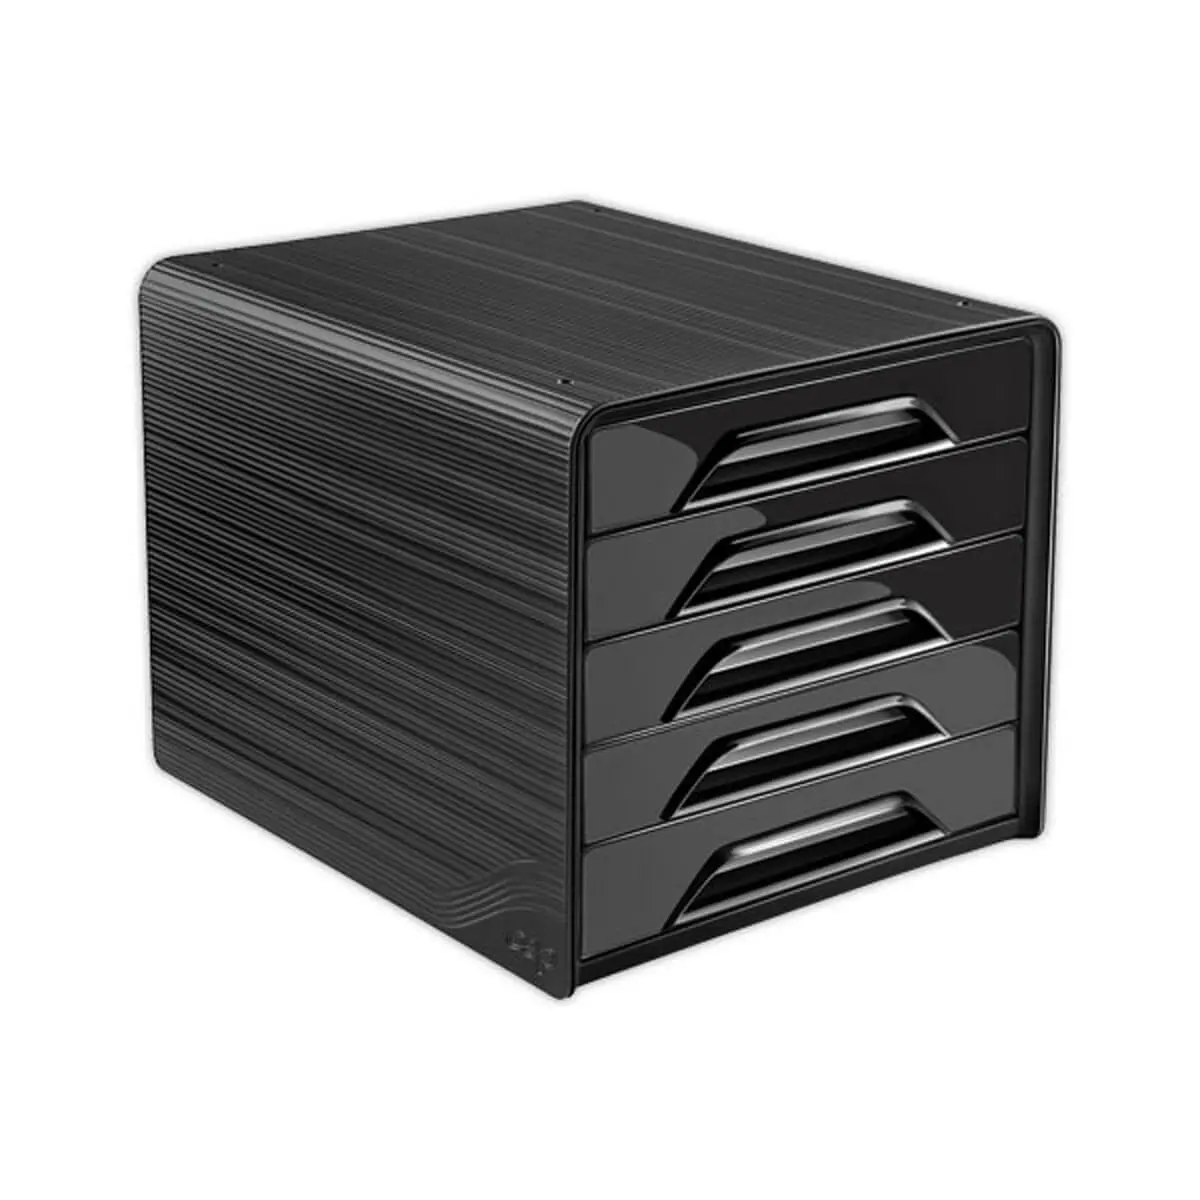 Module de classement 5 tiroirs standards corps noir noir photo du produit